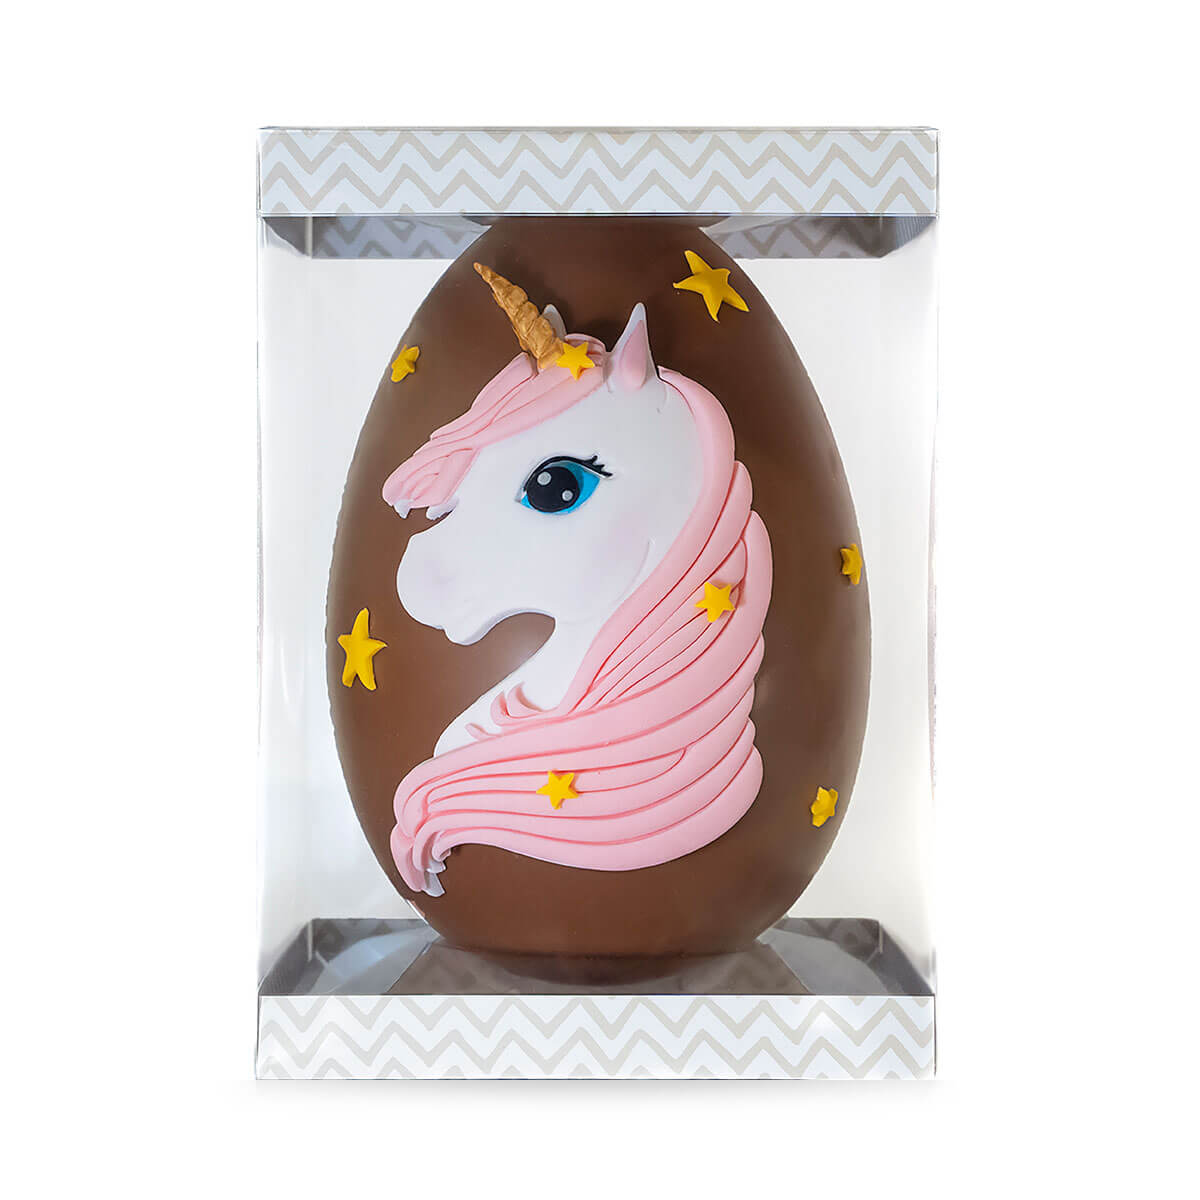 Σοκολατένιο Πασχαλινό Αυγό ντυμένο με ζαχαρόπαστα σε σχέδιο Μονόκερος.